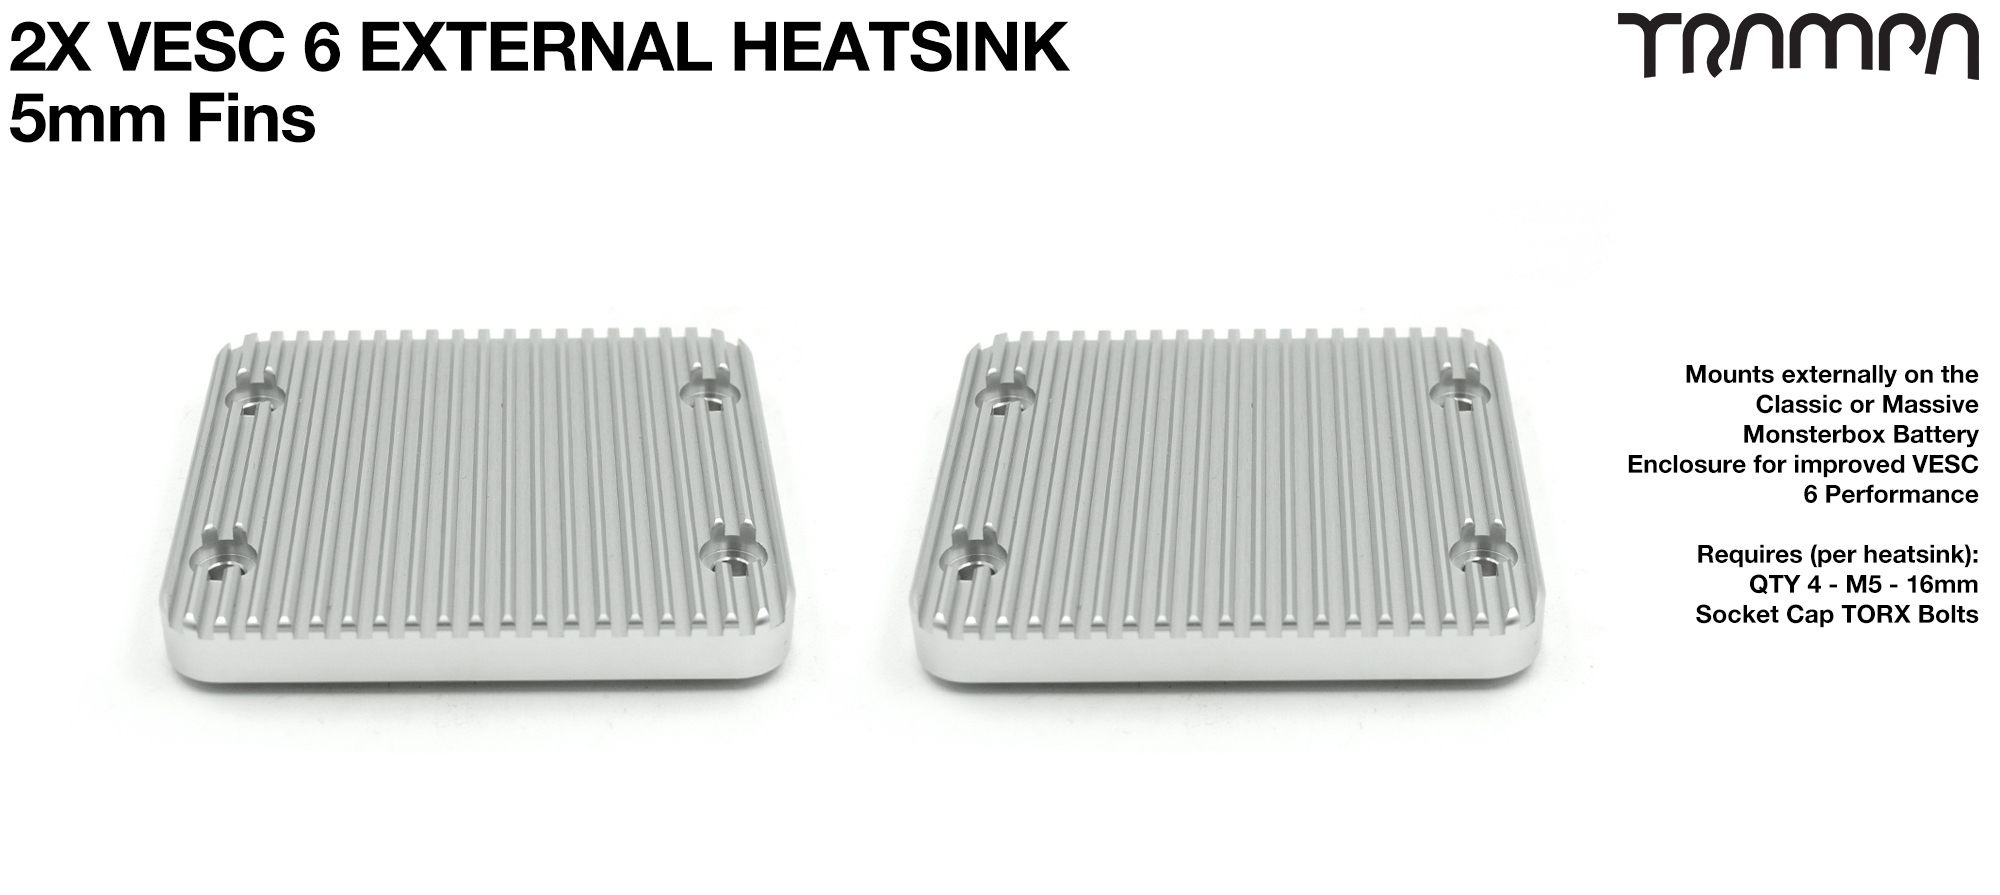 2x VESC 6 Monster Box External HEAT SINK - 5mm Cooling fins